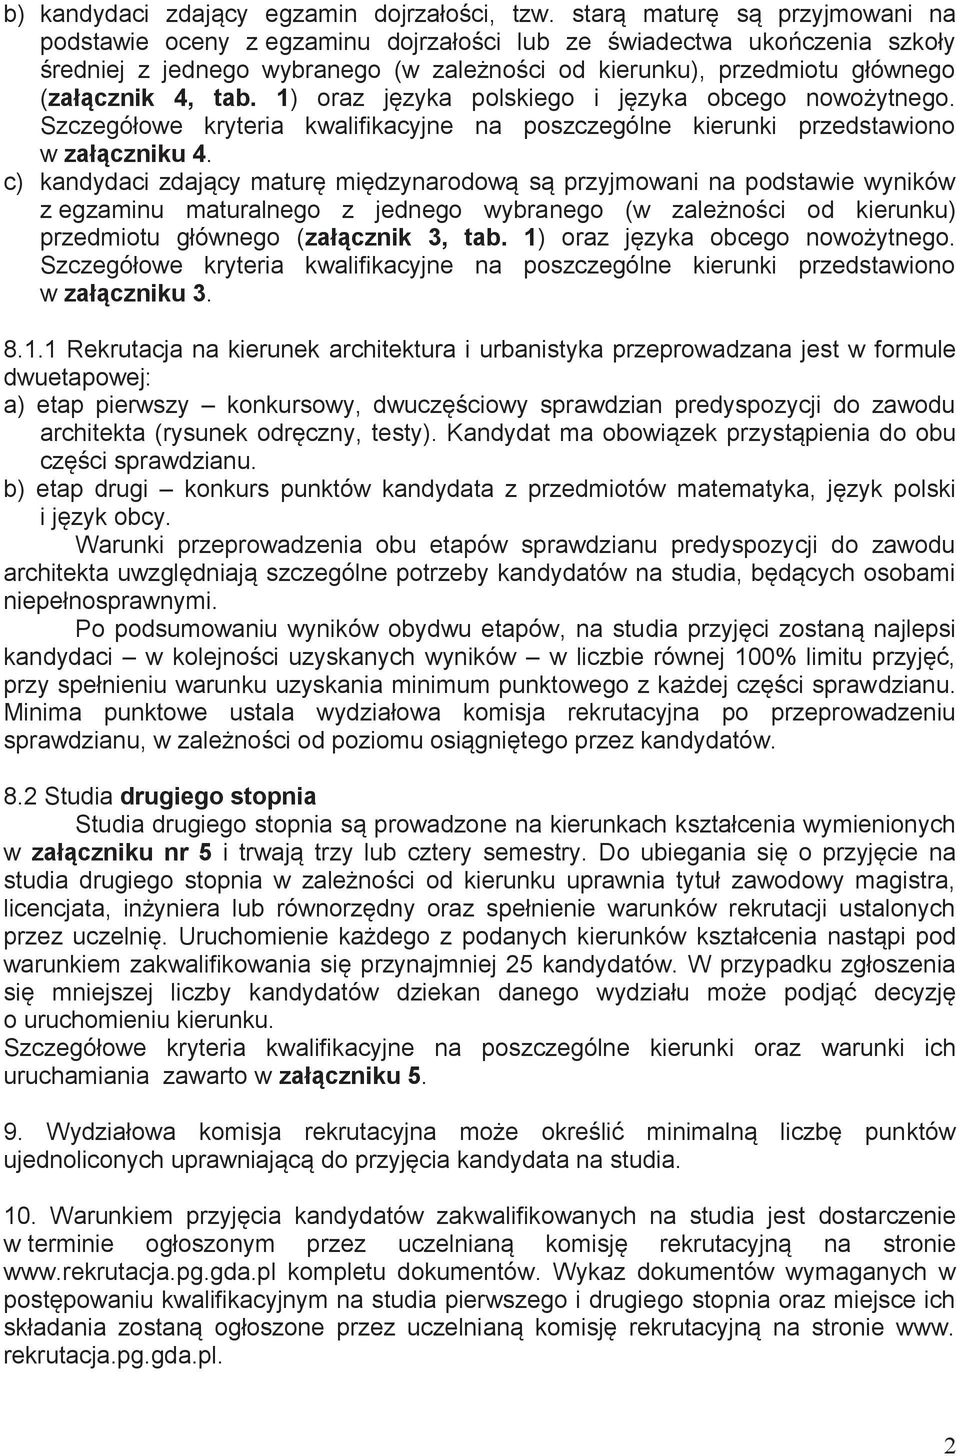 tab. 1) oraz języka polskiego i języka obcego nowożytnego. Szczegółowe kryteria kwalifikacyjne na poszczególne kierunki przedstawiono w załączniku 4.